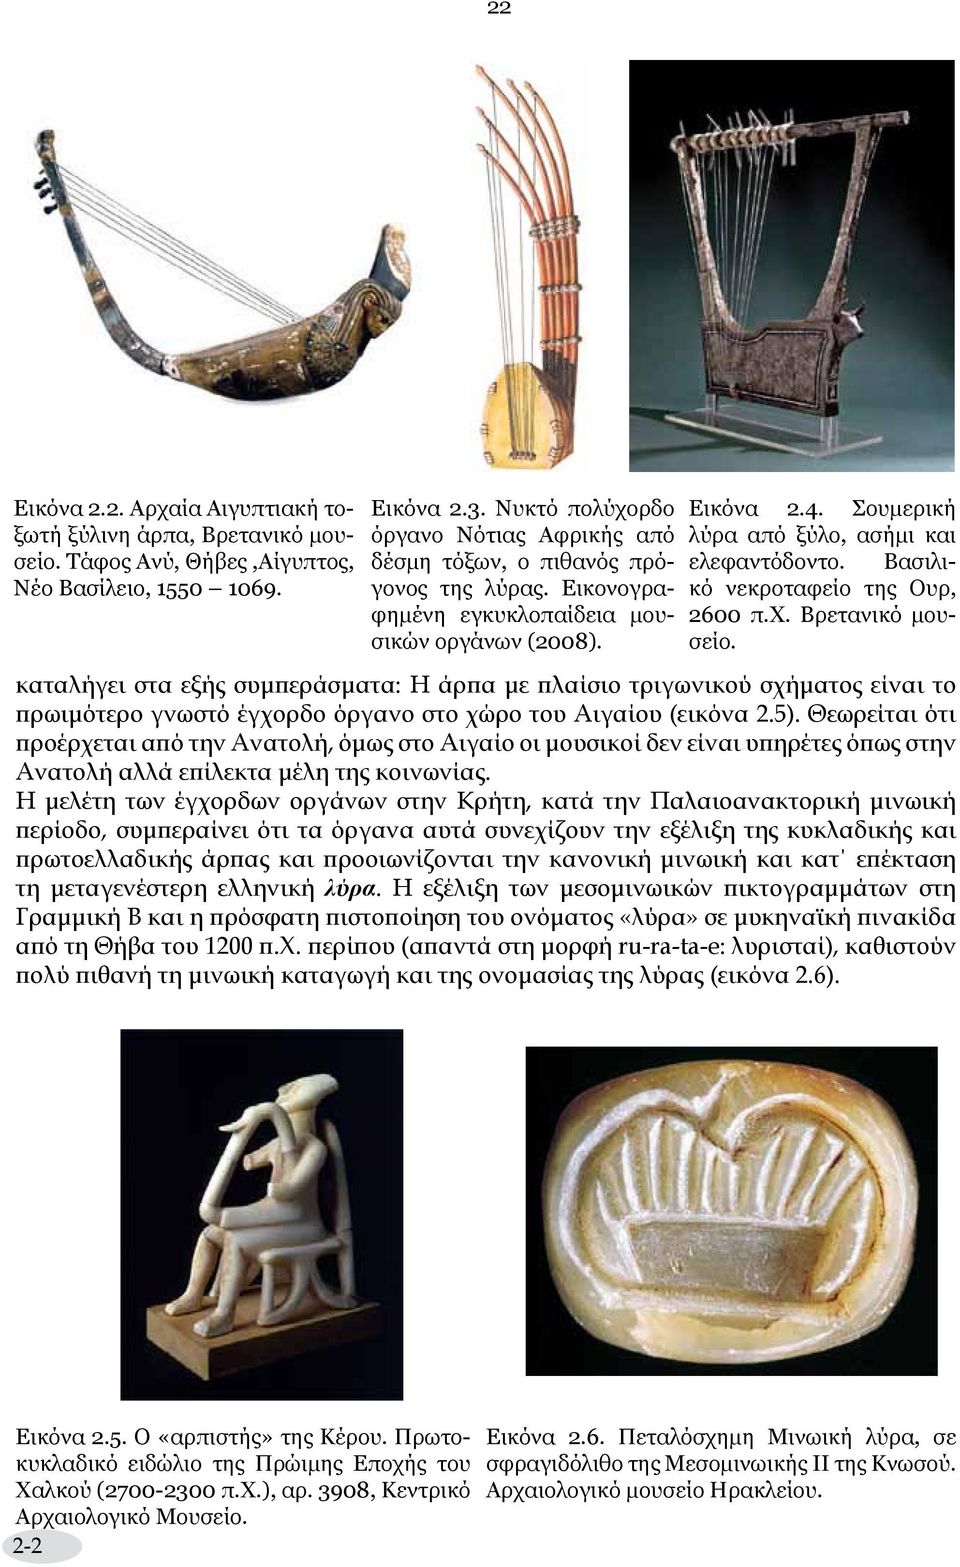 Σουμερική λύρα από ξύλο, ασήμι και ελεφαντόδοντο. Βασιλικό νεκροταφείο της Ουρ, 2600 π.χ. Βρετανικό μουσείο.